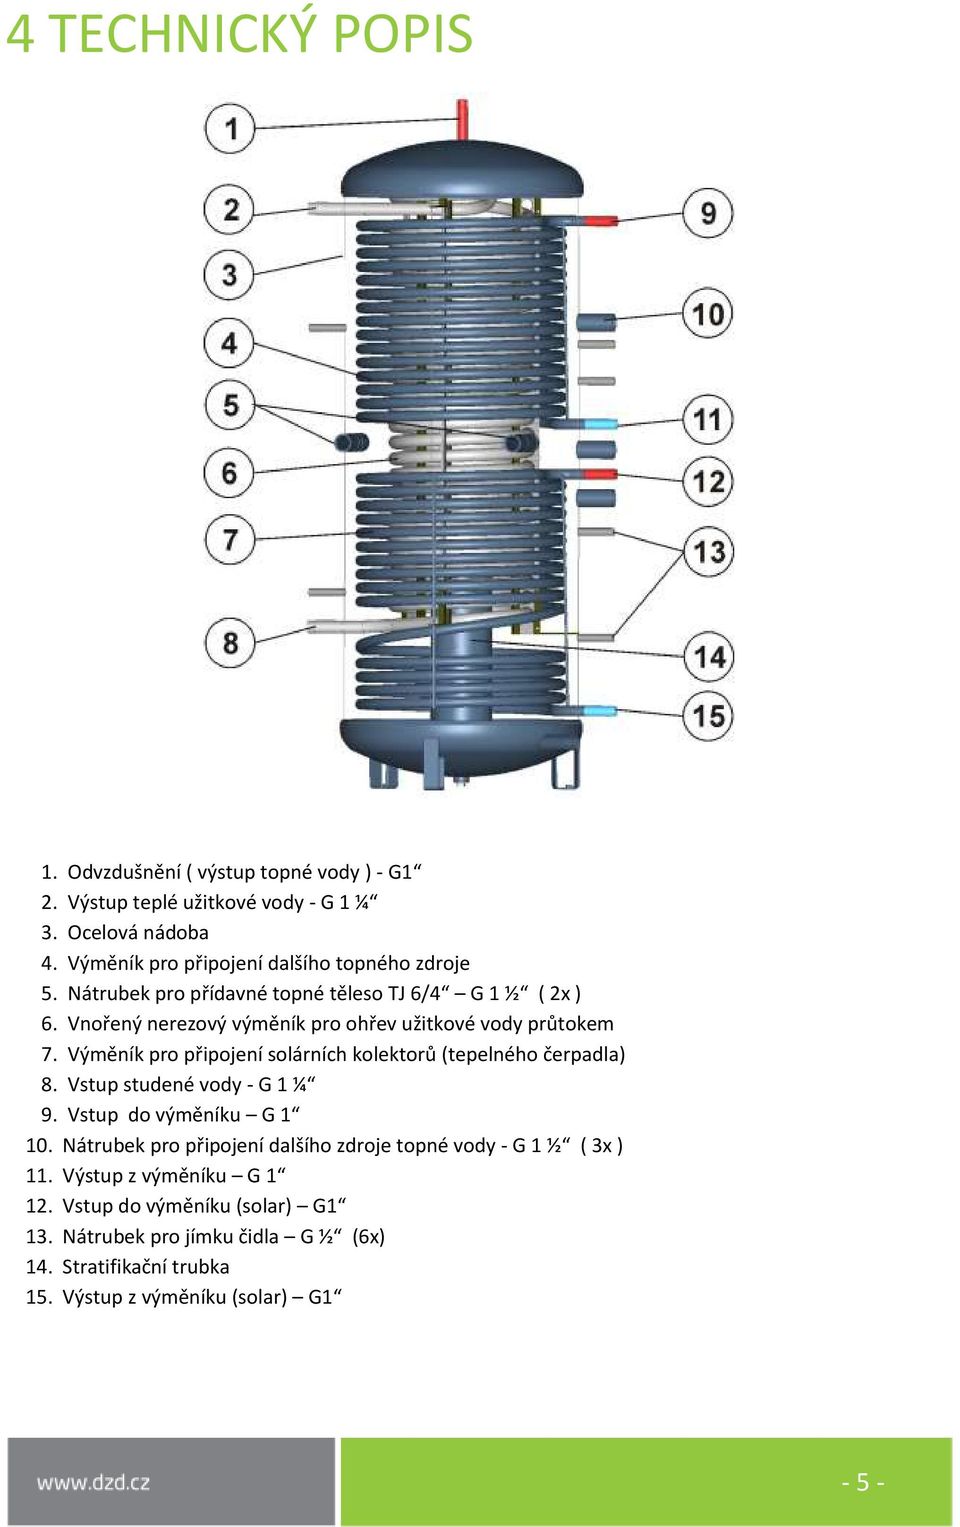 Vnořený nerezový výměník pro ohřev užitkové vody průtokem 7. Výměník pro připojení solárních kolektorů (tepelného čerpadla) 8. Vstup studené vody - G 1 ¼ 9.